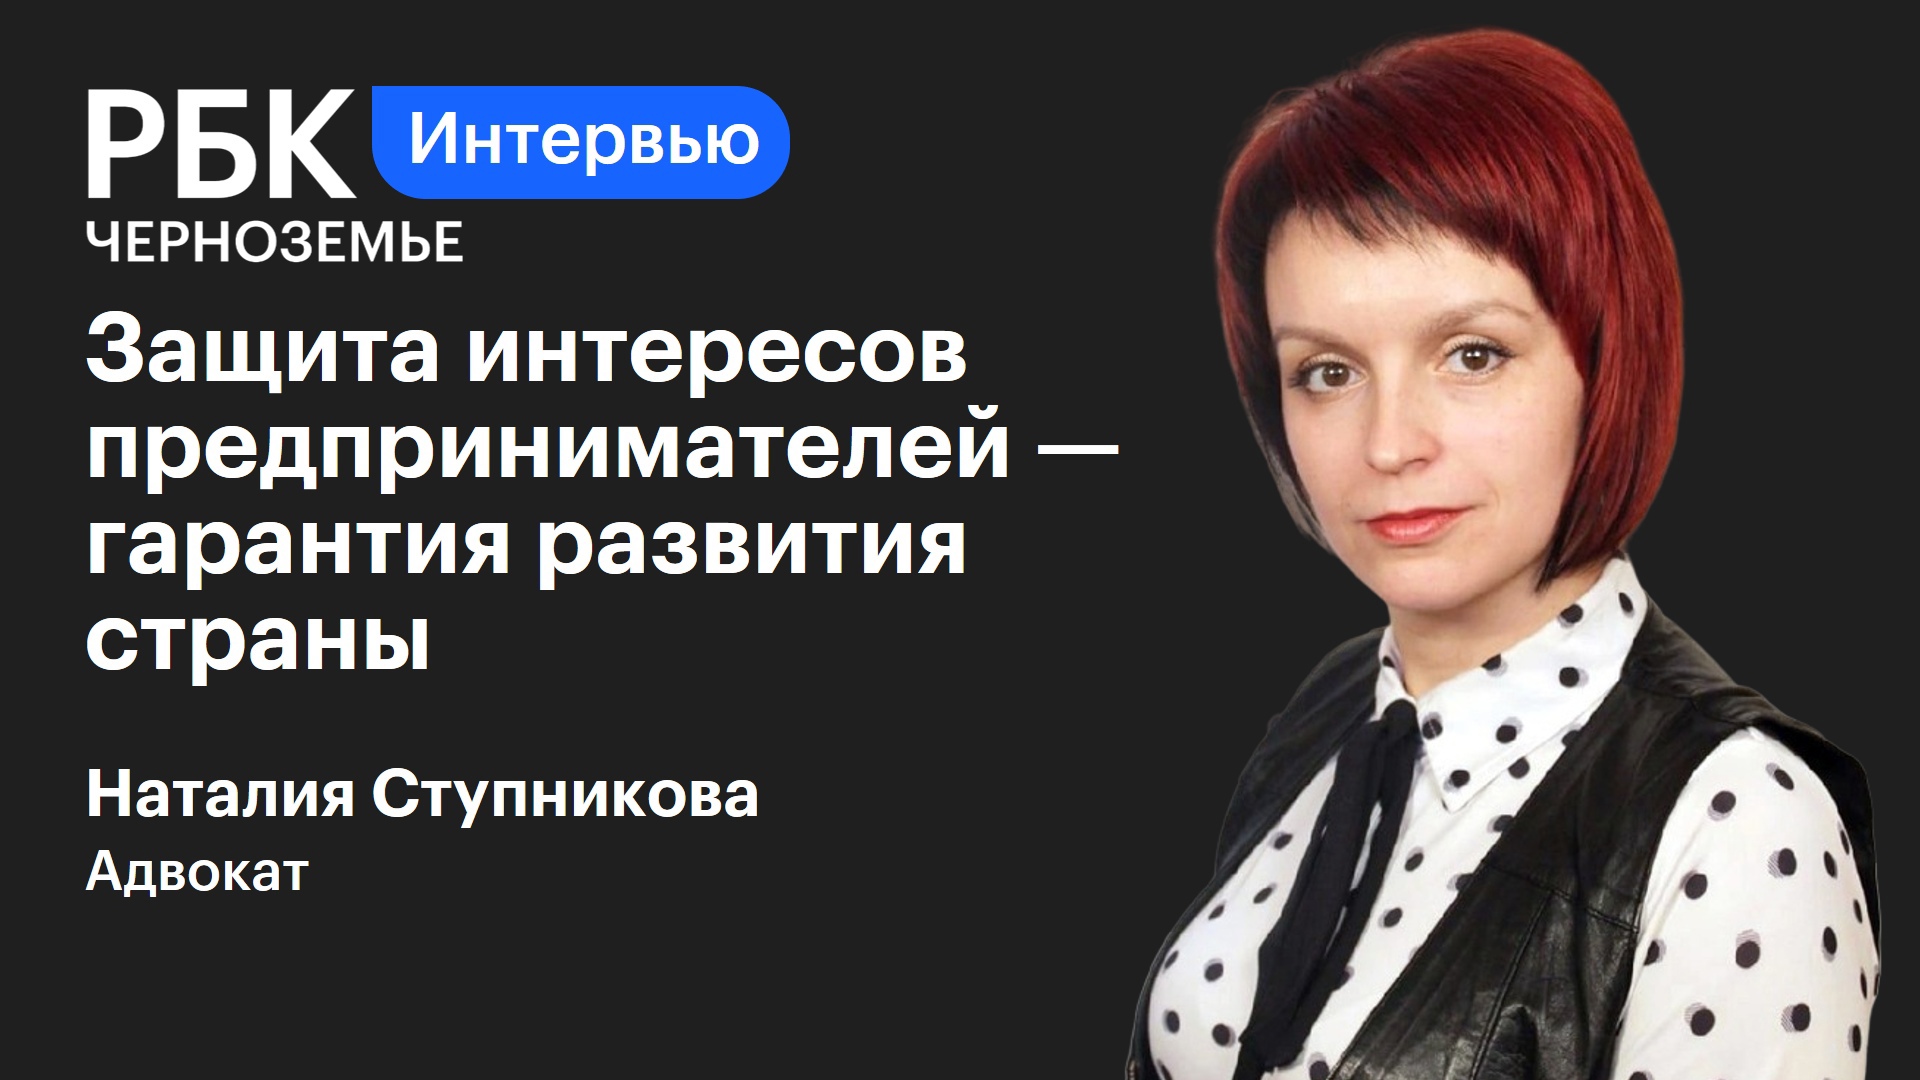 Наталия Ступникова: «Защита интересов предпринимателей — гарантия развития страны»